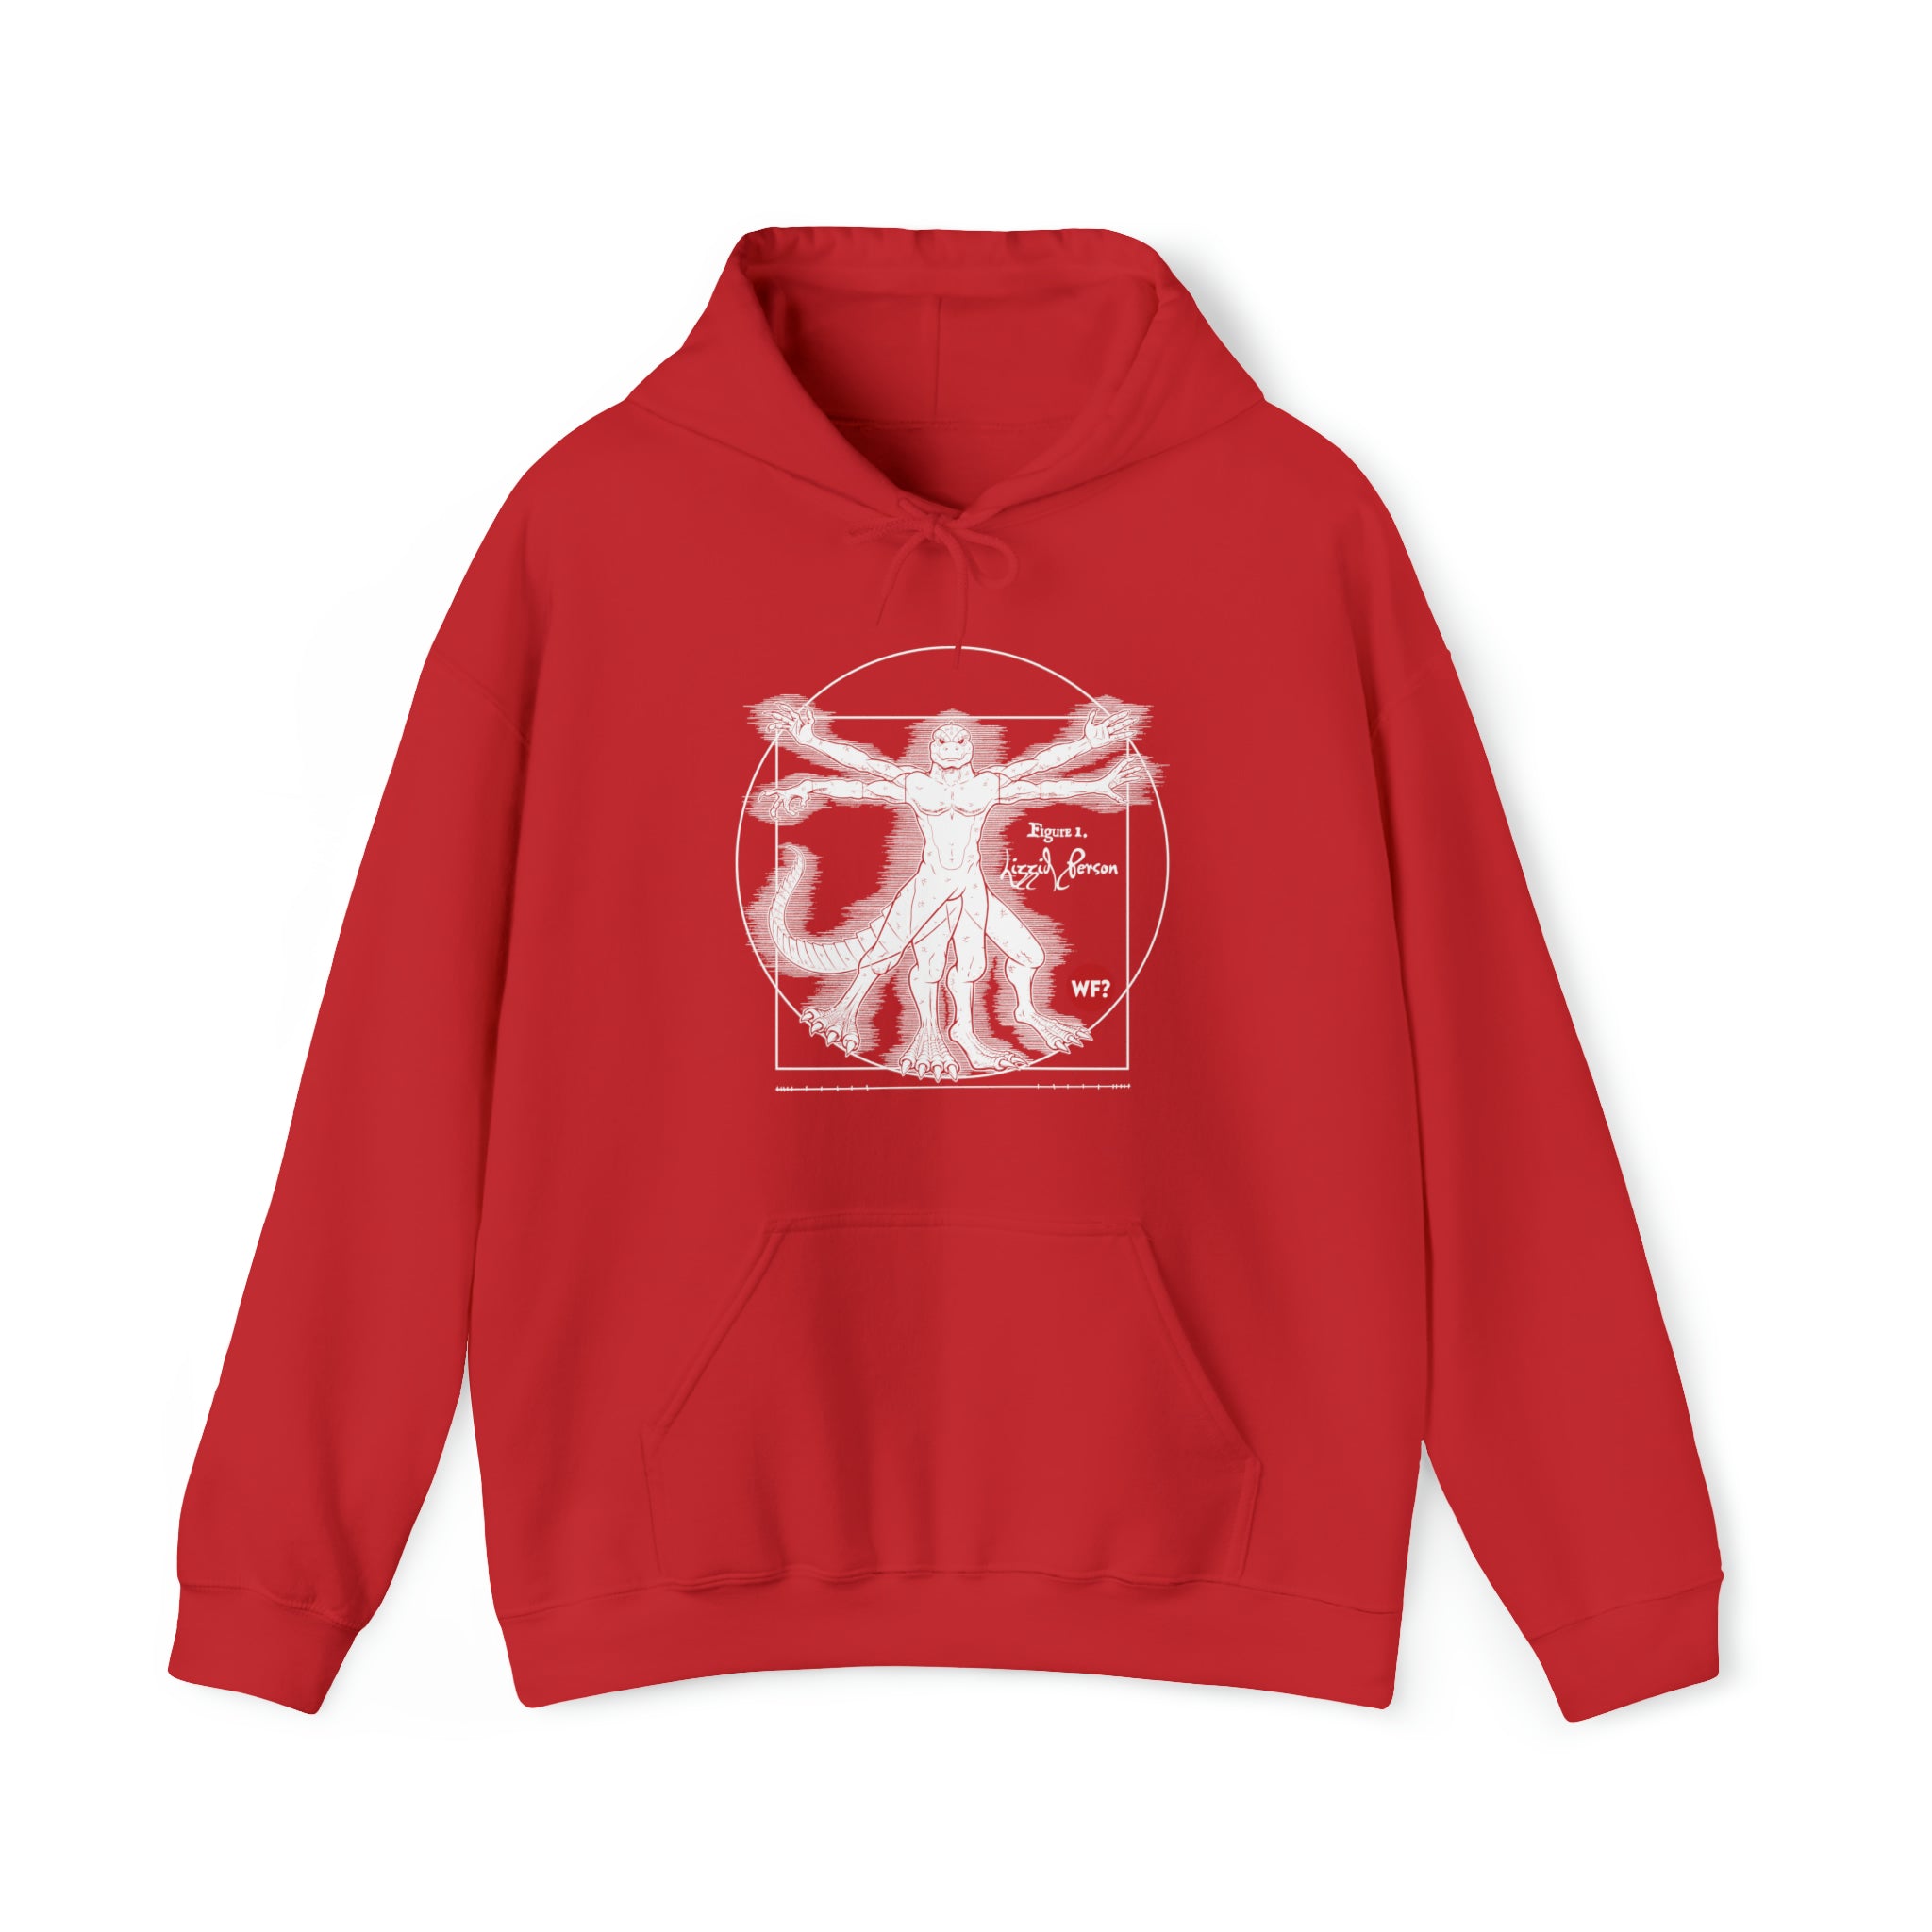 Buy red Vitruvian Lizzid Peeple Unisex Heavy Blend™ Hooded Sweatshirt